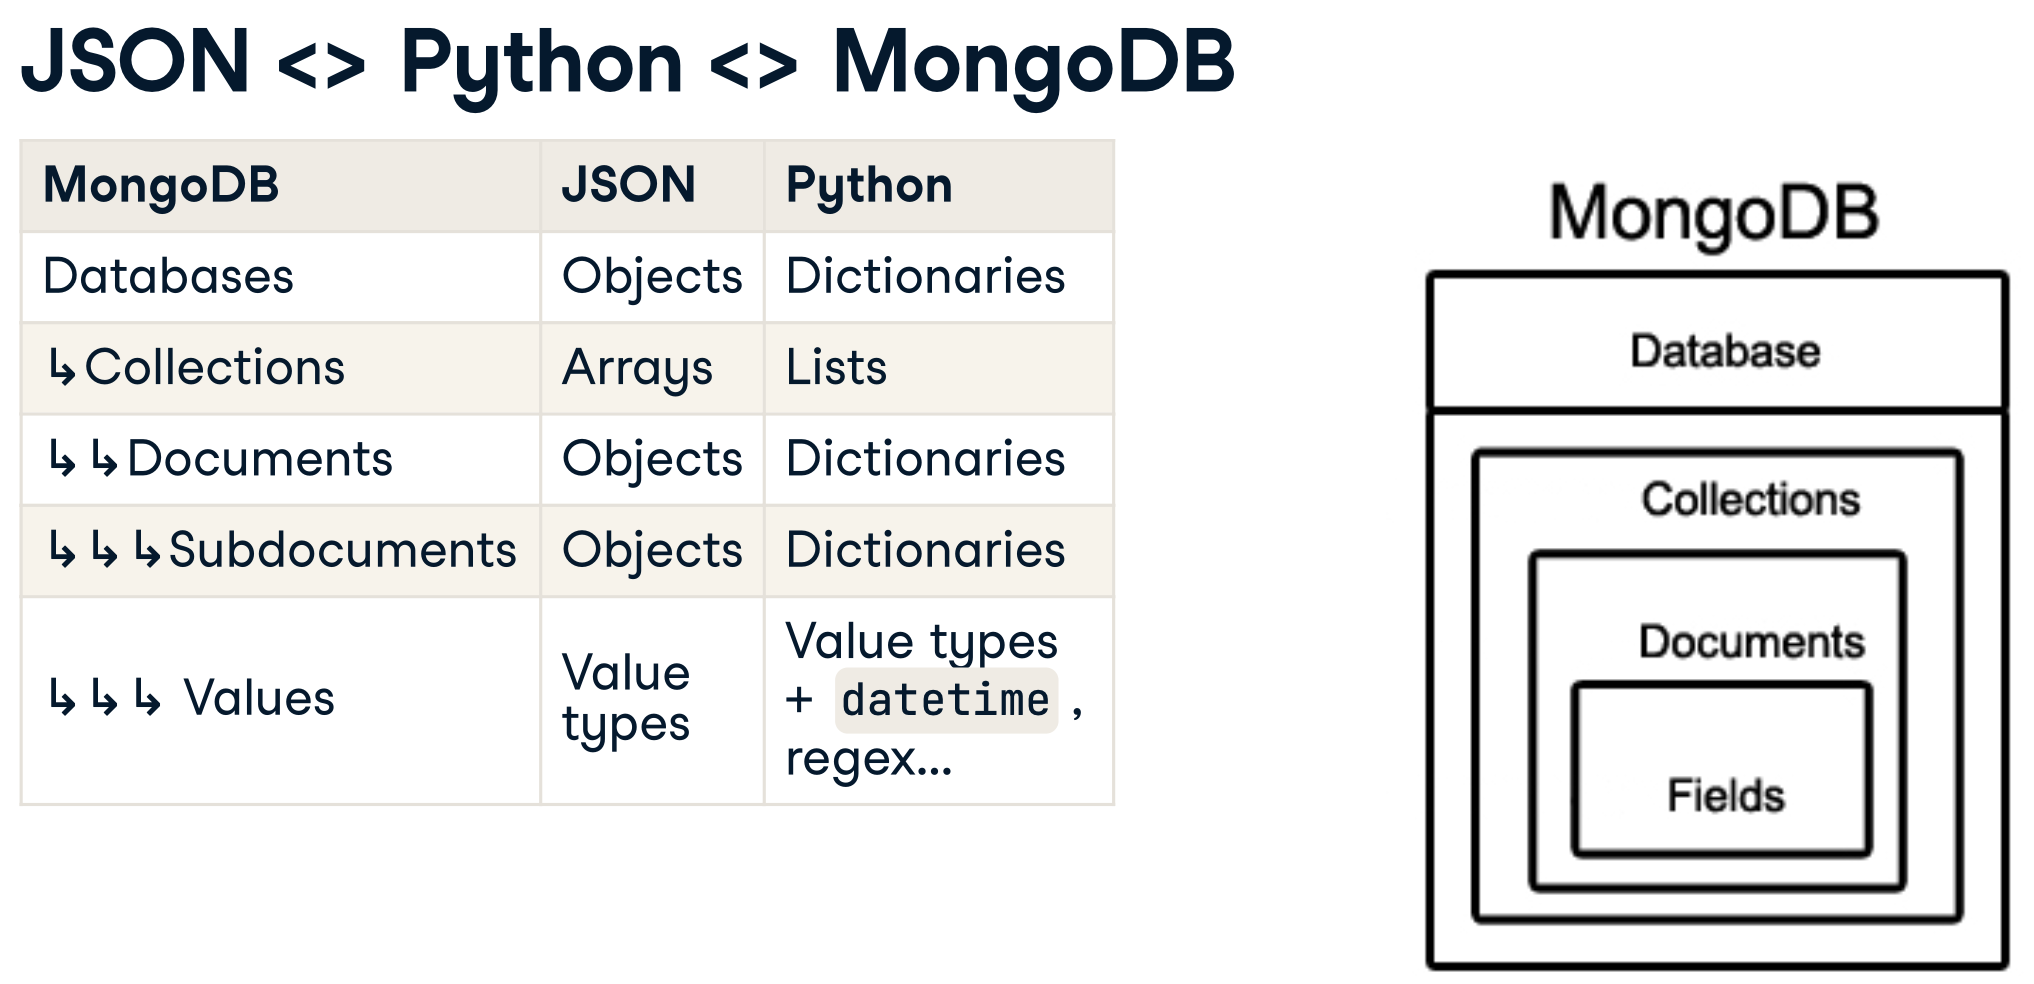 JSON <> Python <> MongoDB